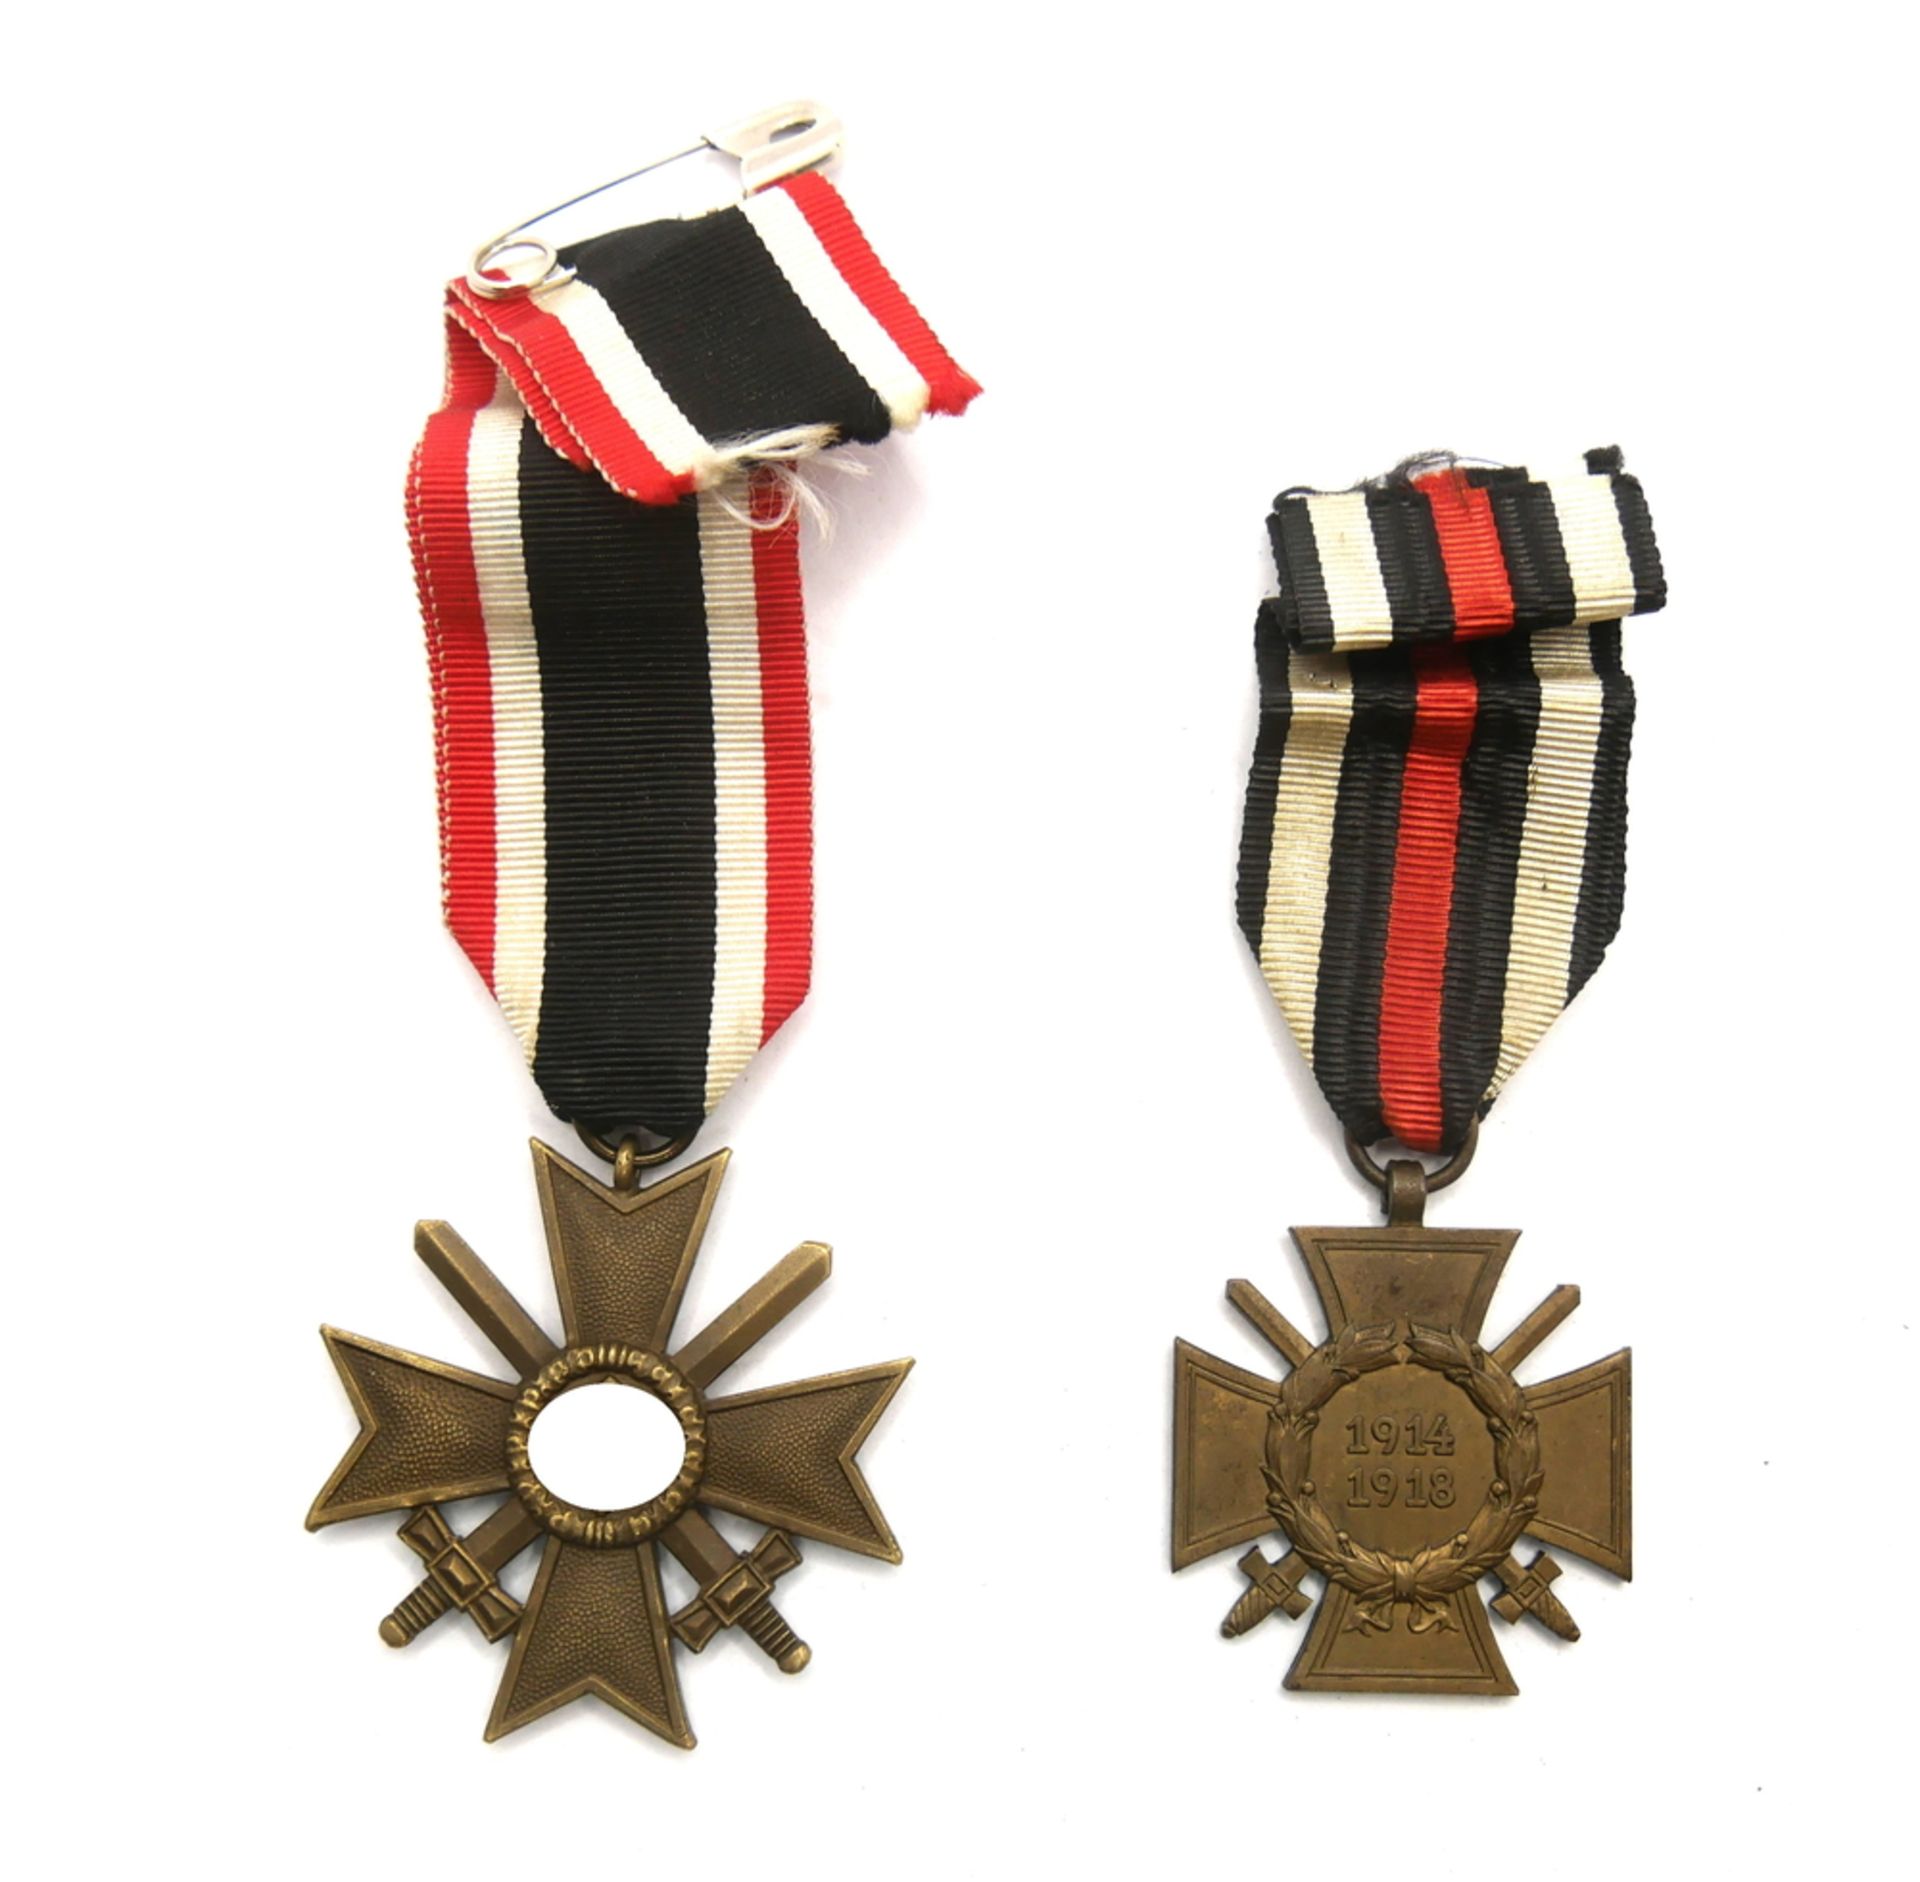 Militärdienstkreuz mit Schwertern 1914-1918 am Bande + Ehrenkreuz für Frontkämpfer. Wurde am 2.8.